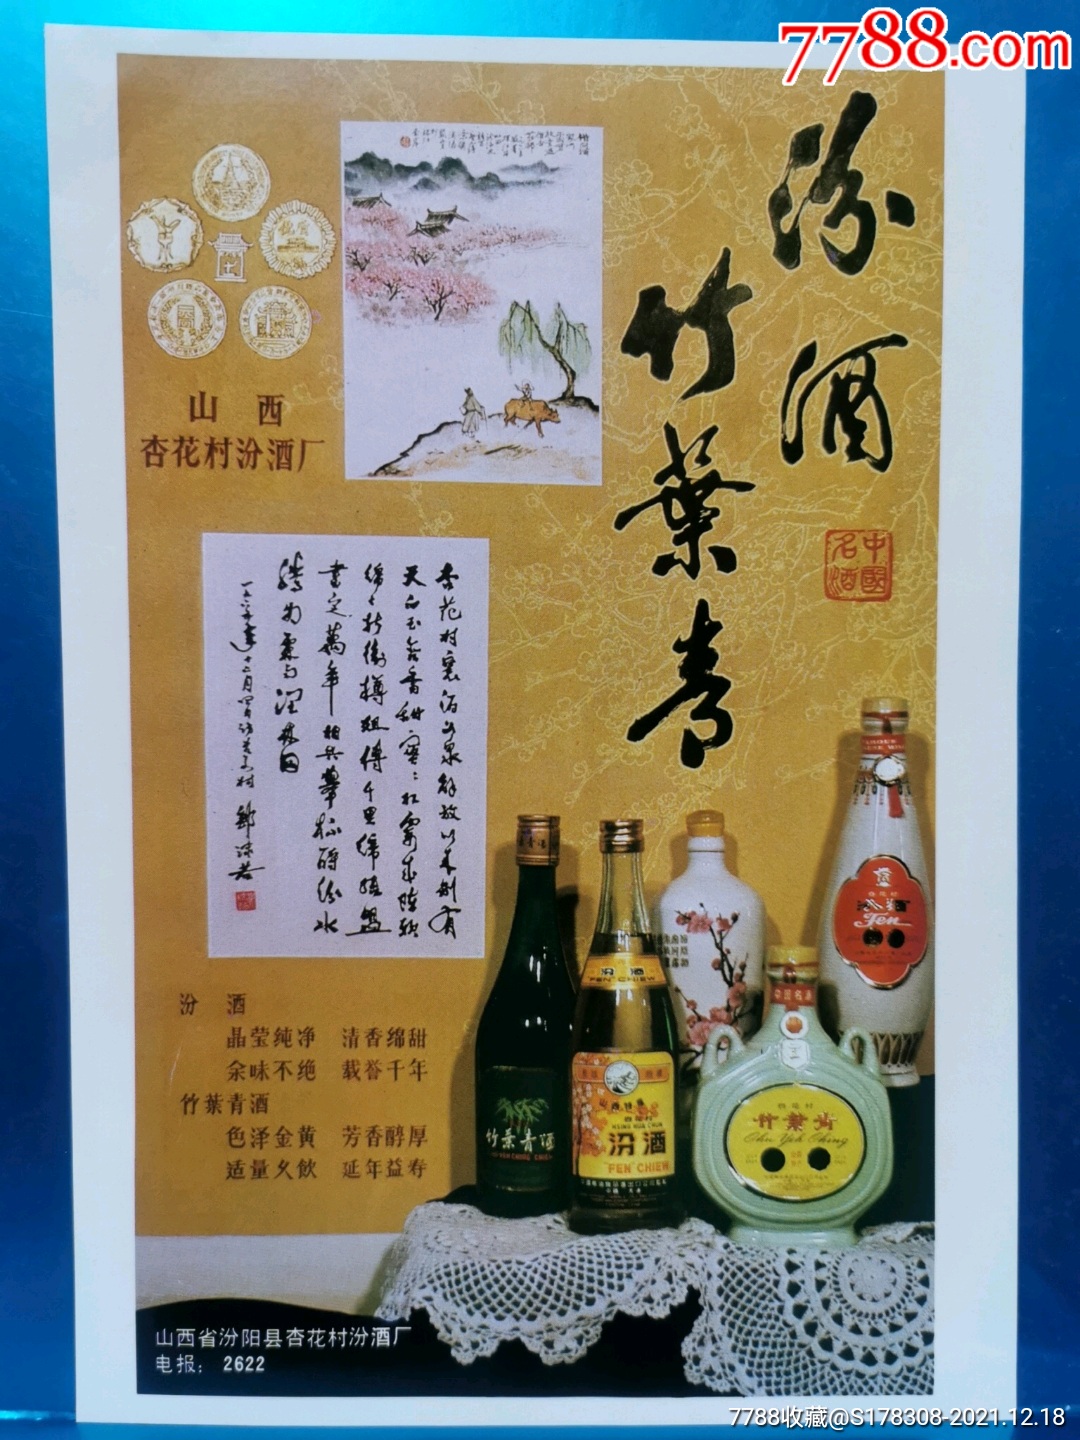 竹叶青酒广告15秒图片